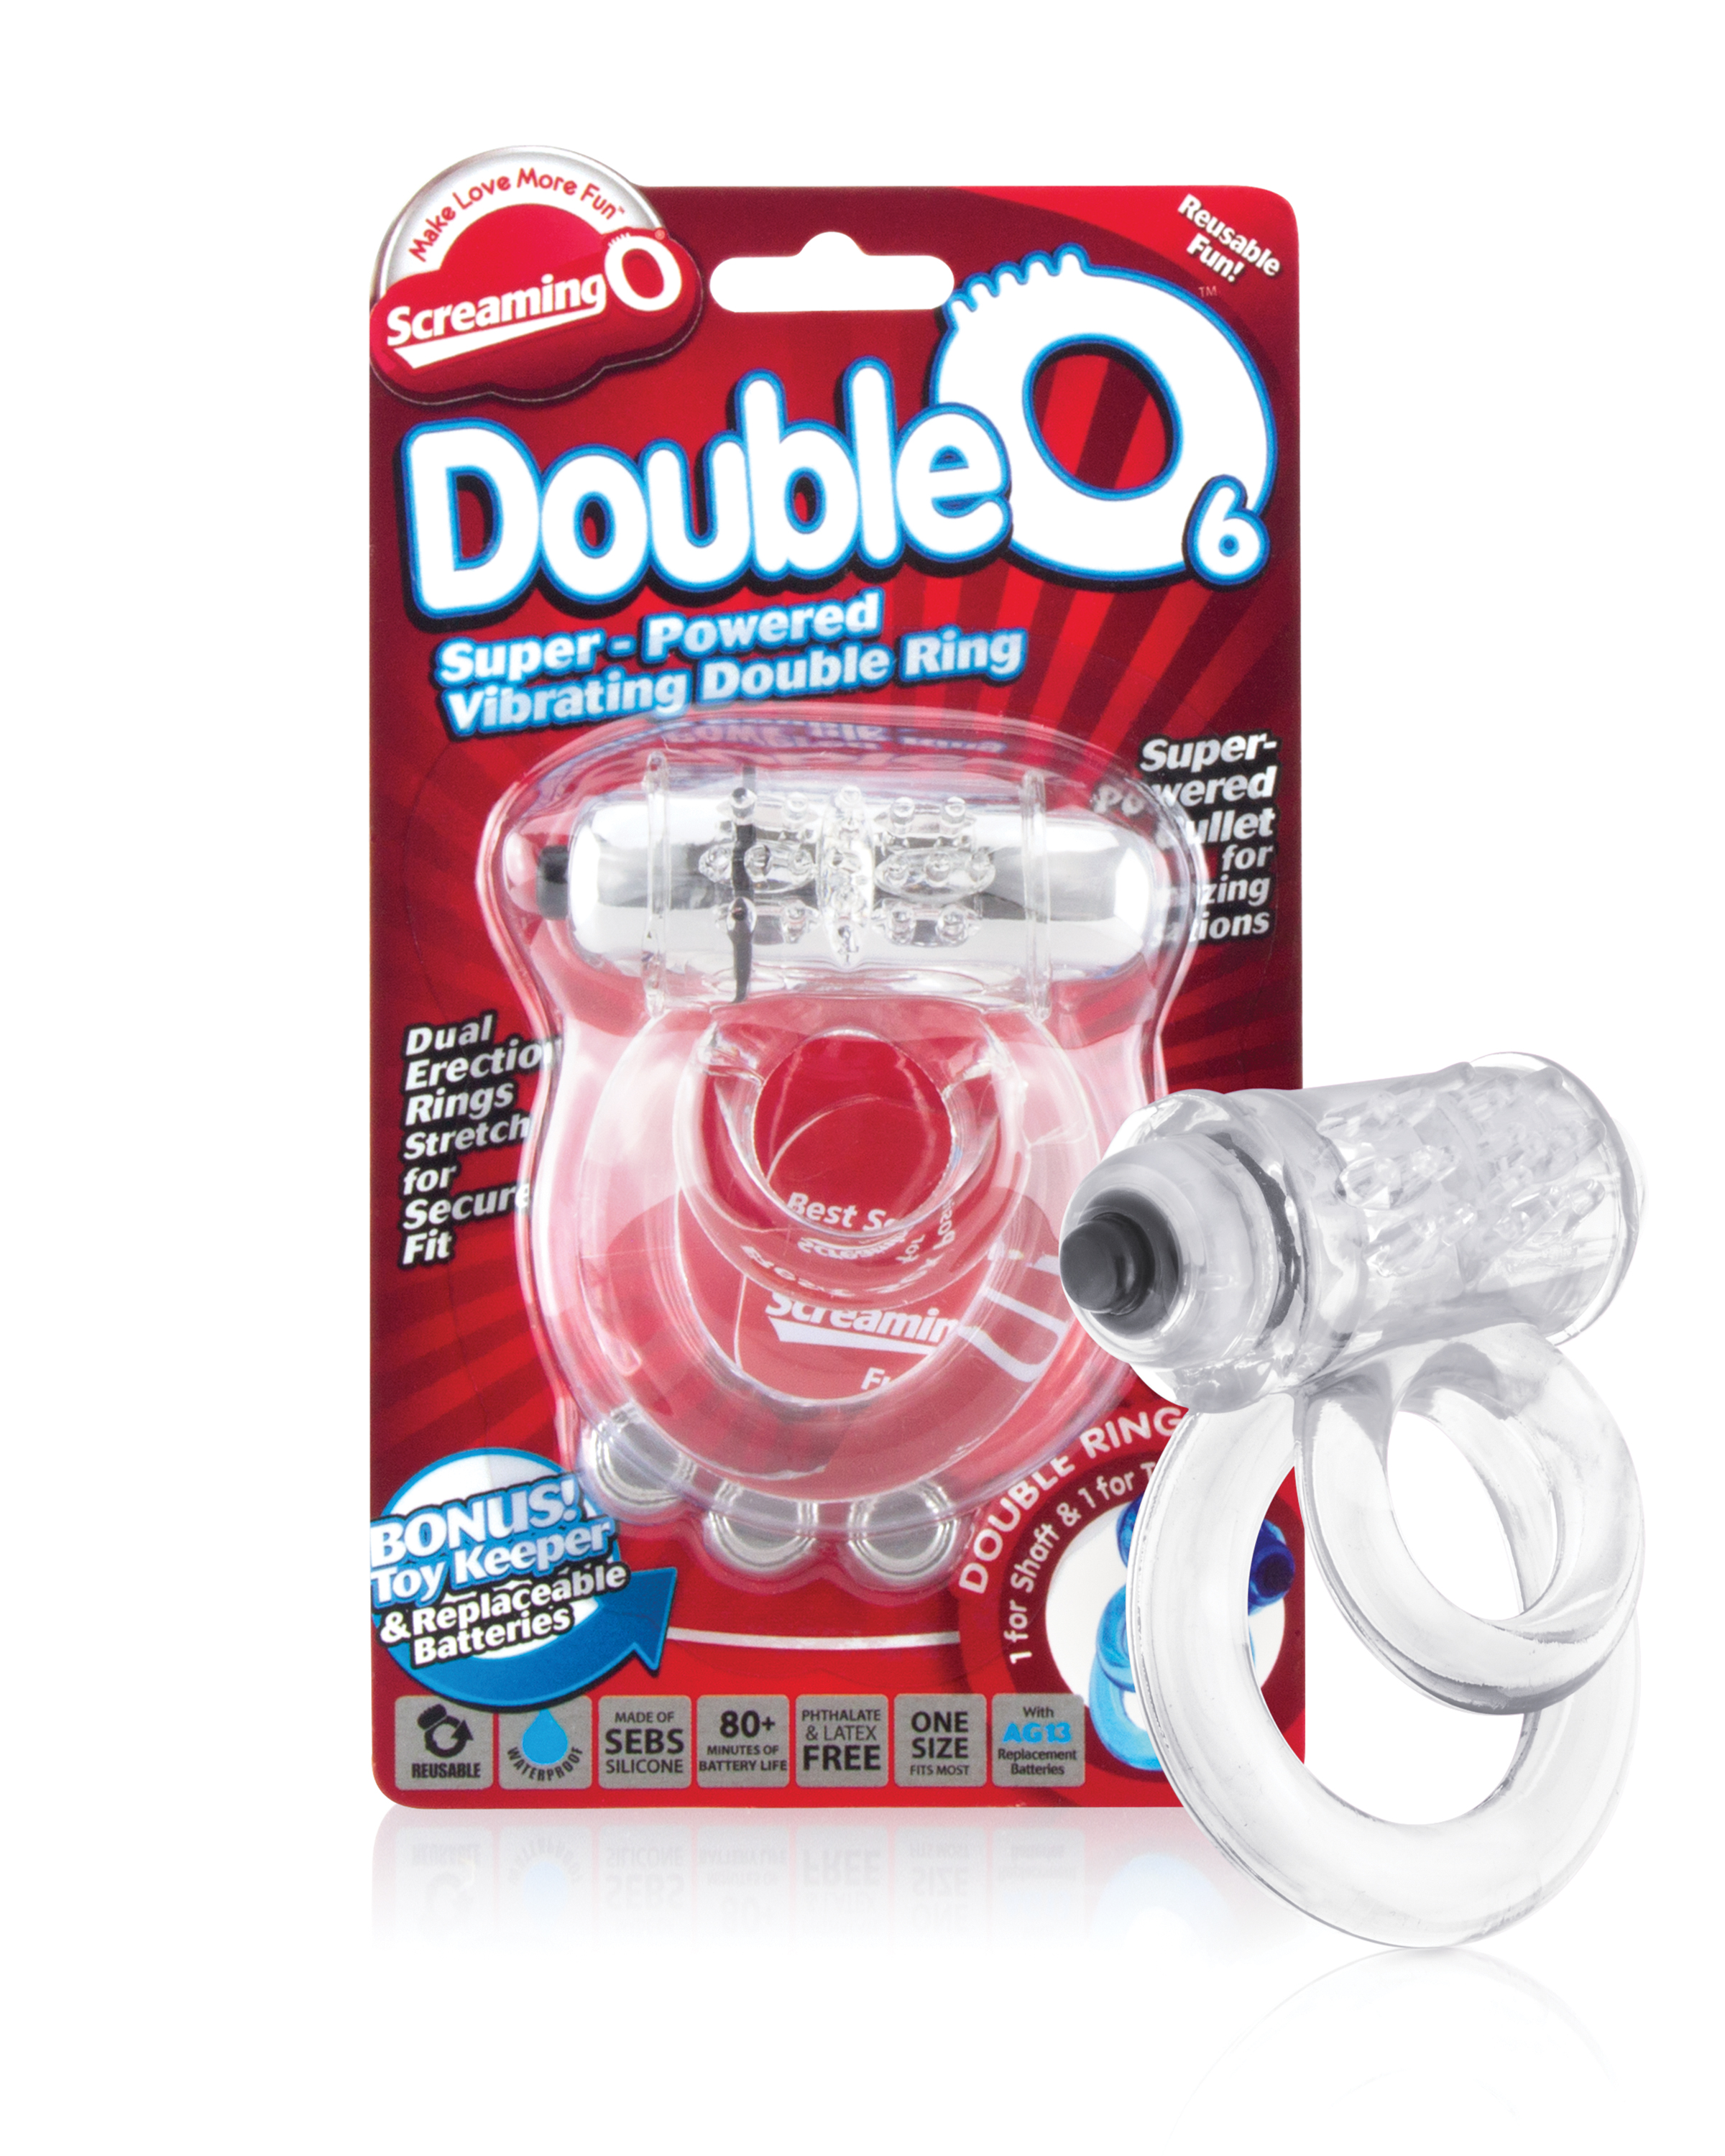 Doubleo 6 - Each - Clear